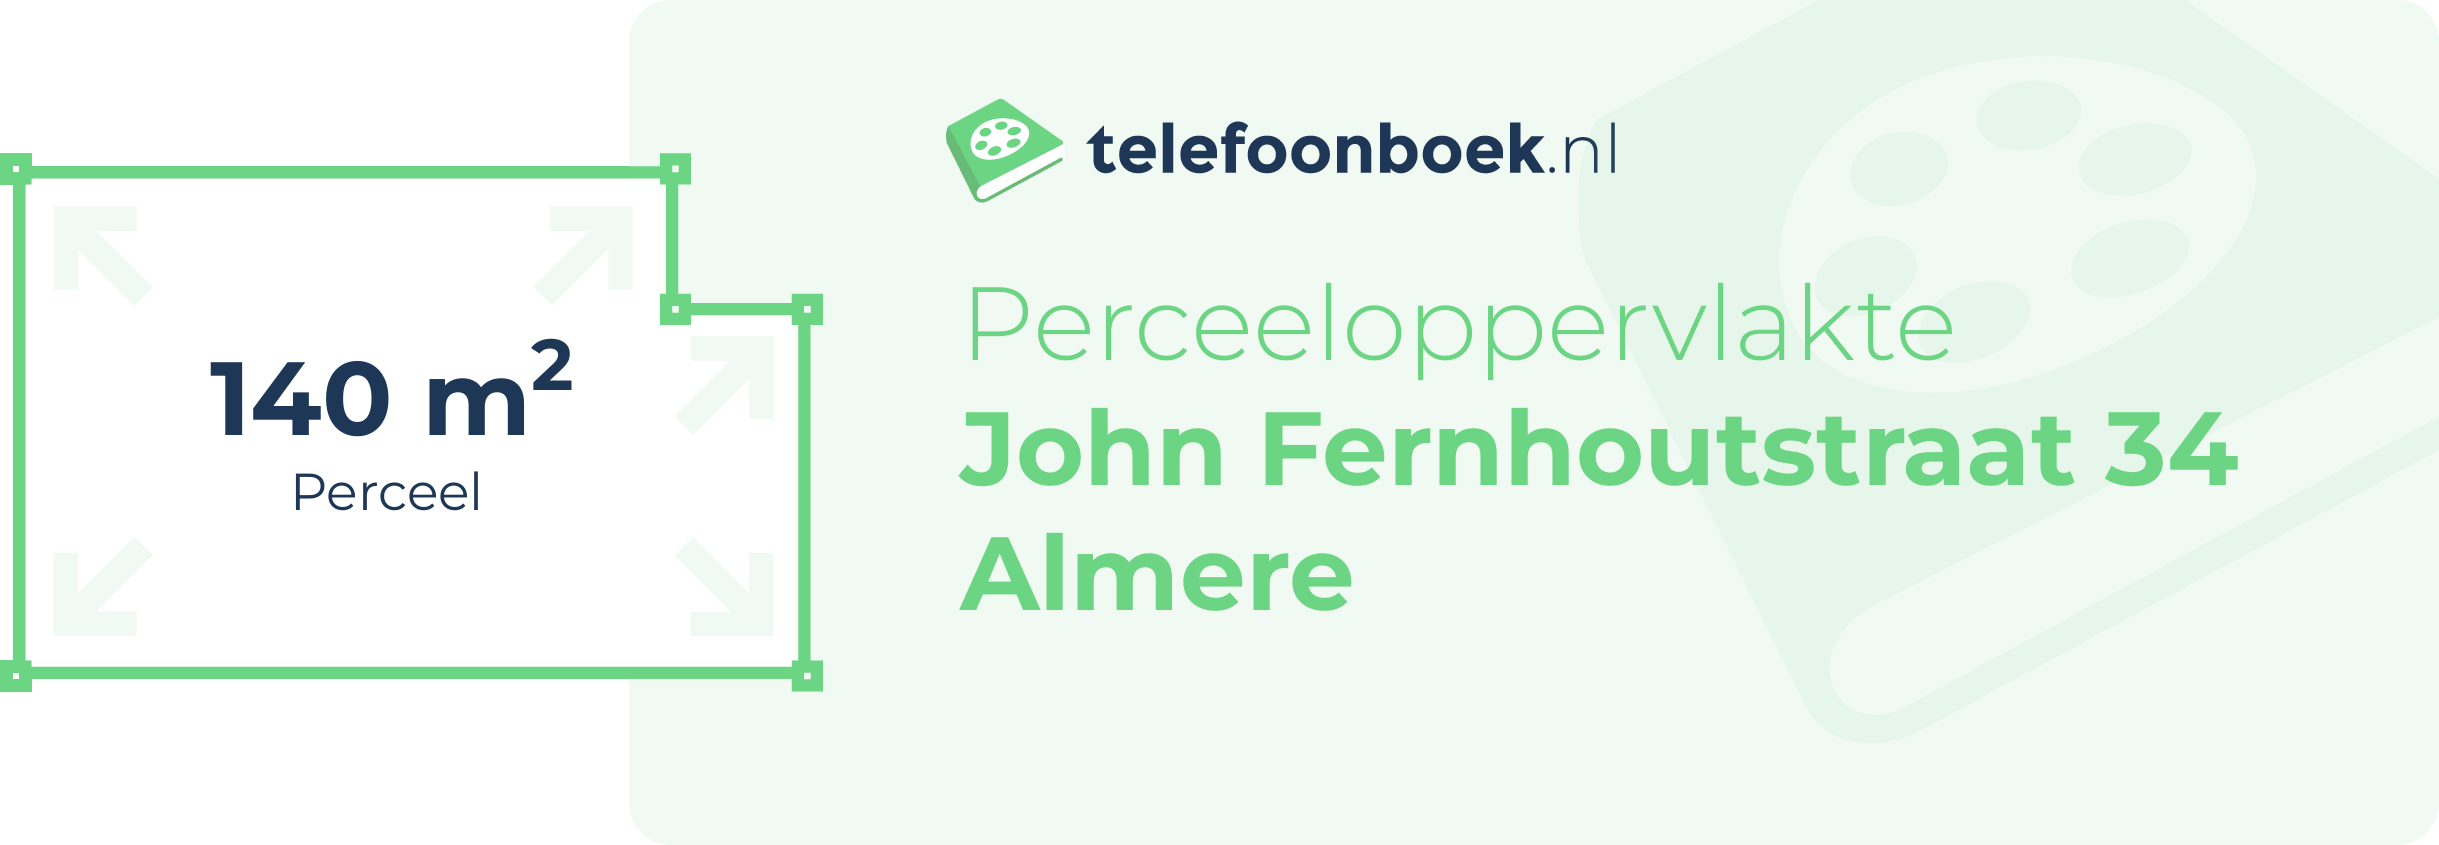 Perceeloppervlakte John Fernhoutstraat 34 Almere